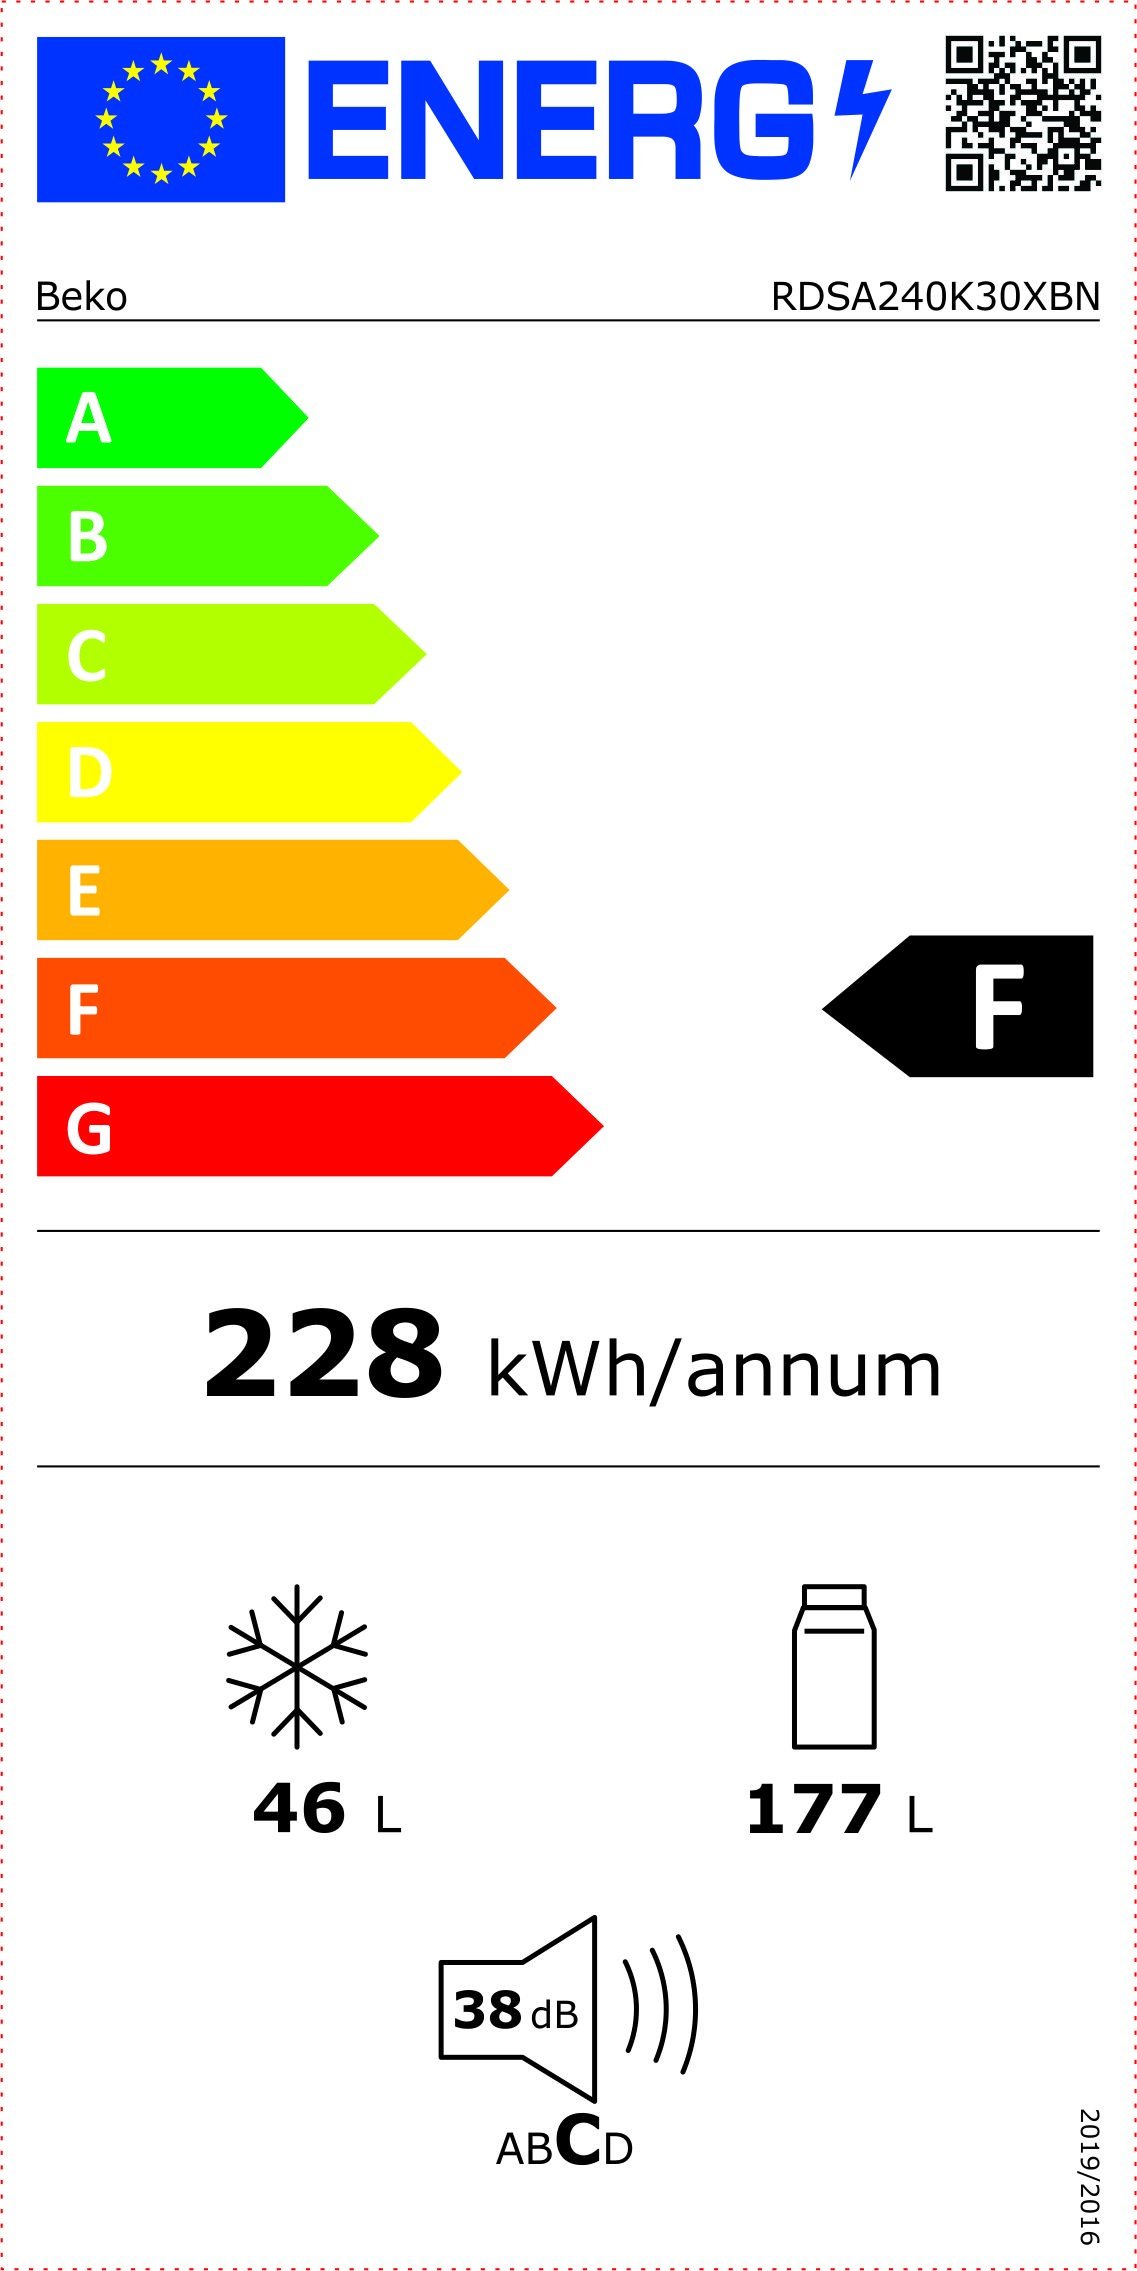 Etiqueta de Eficiencia Energética - RDSA240K30XBN